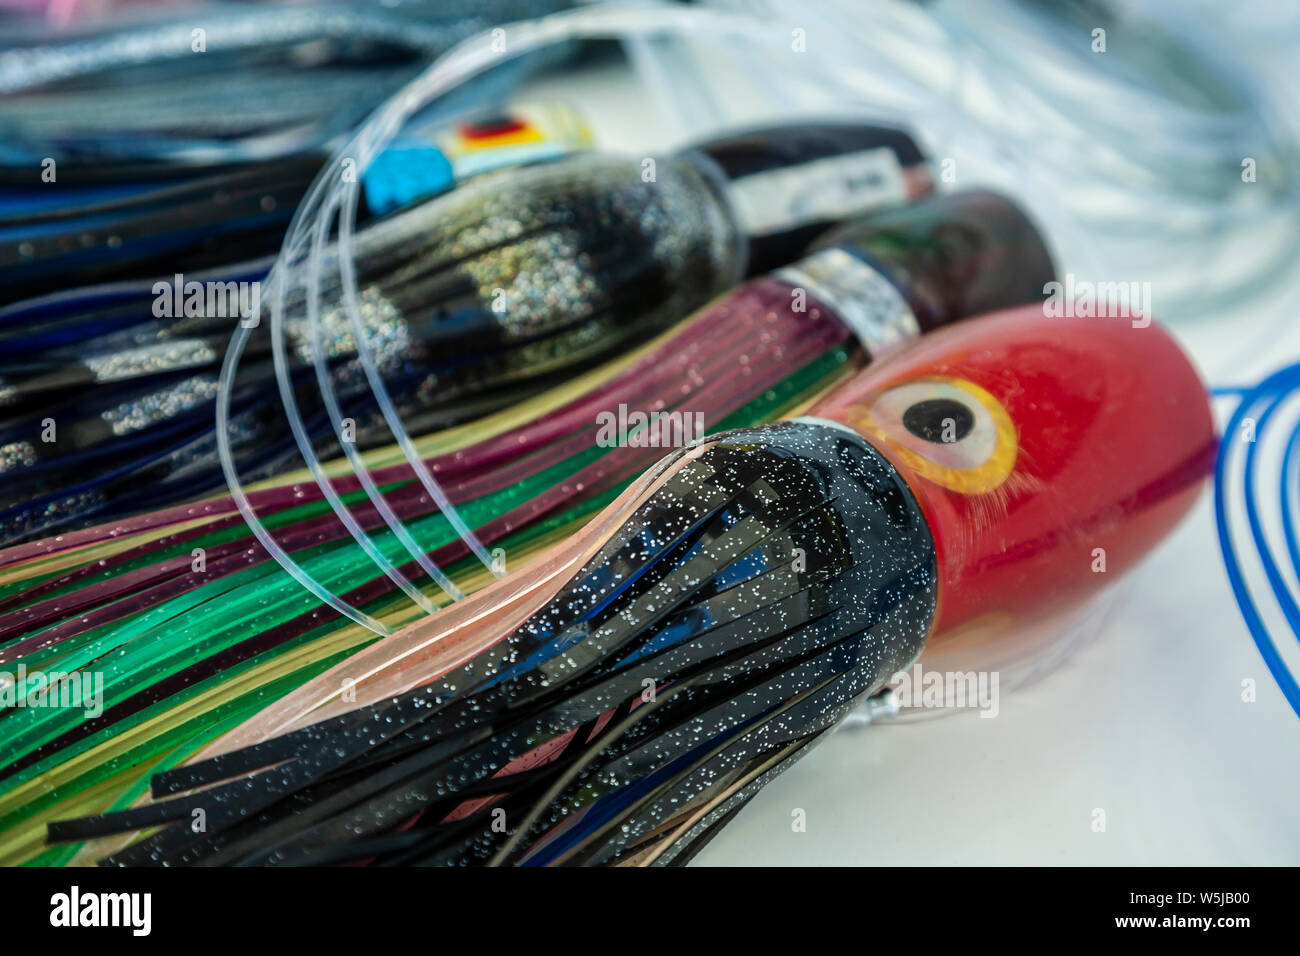 Señuelos d pesca en mar fotografías e imágenes de alta resolución - Alamy